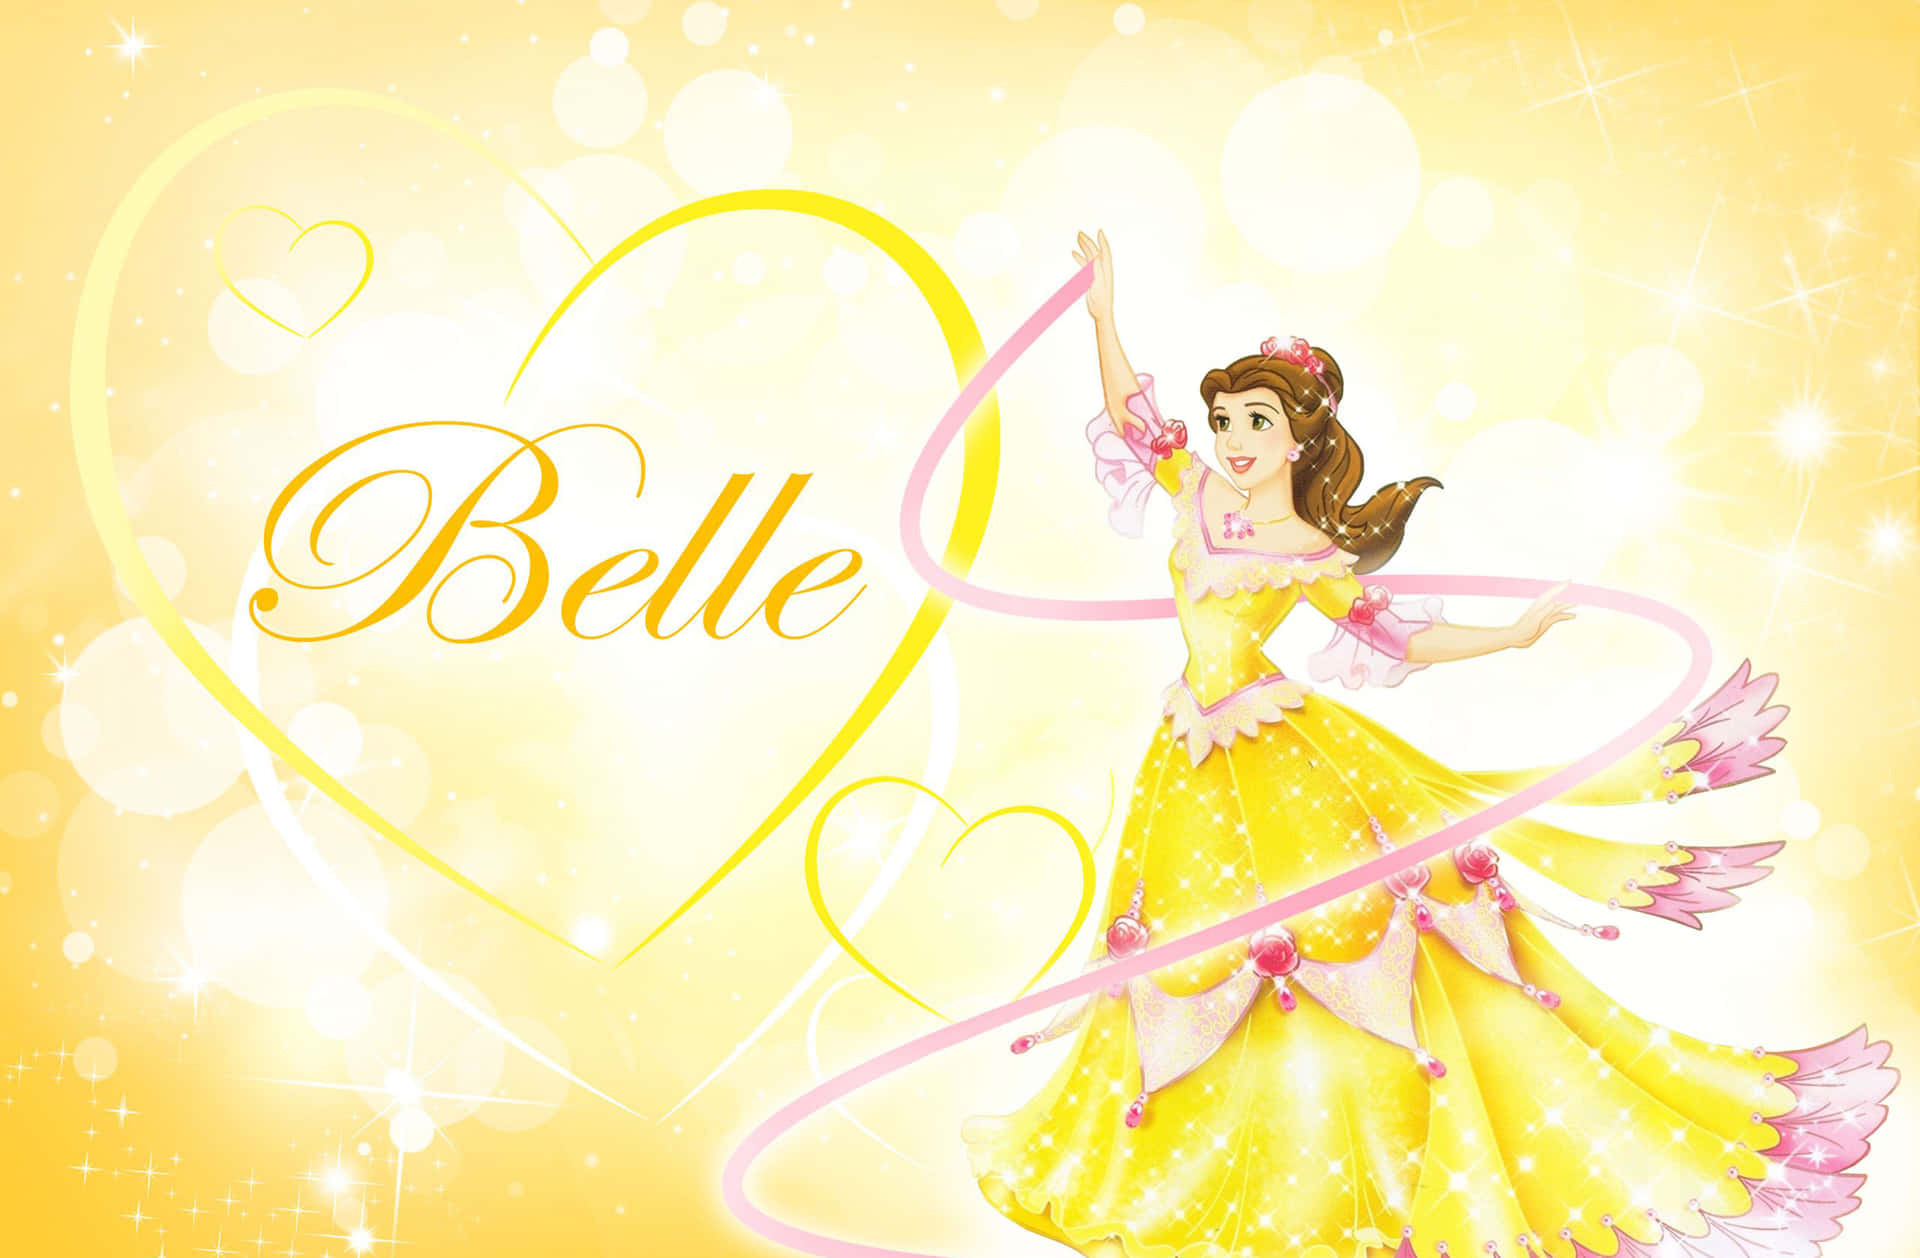 Fireaf De Mest Elskede Disney-prinsesser, Askepot, Snehvide, Jasmin Og Belle.